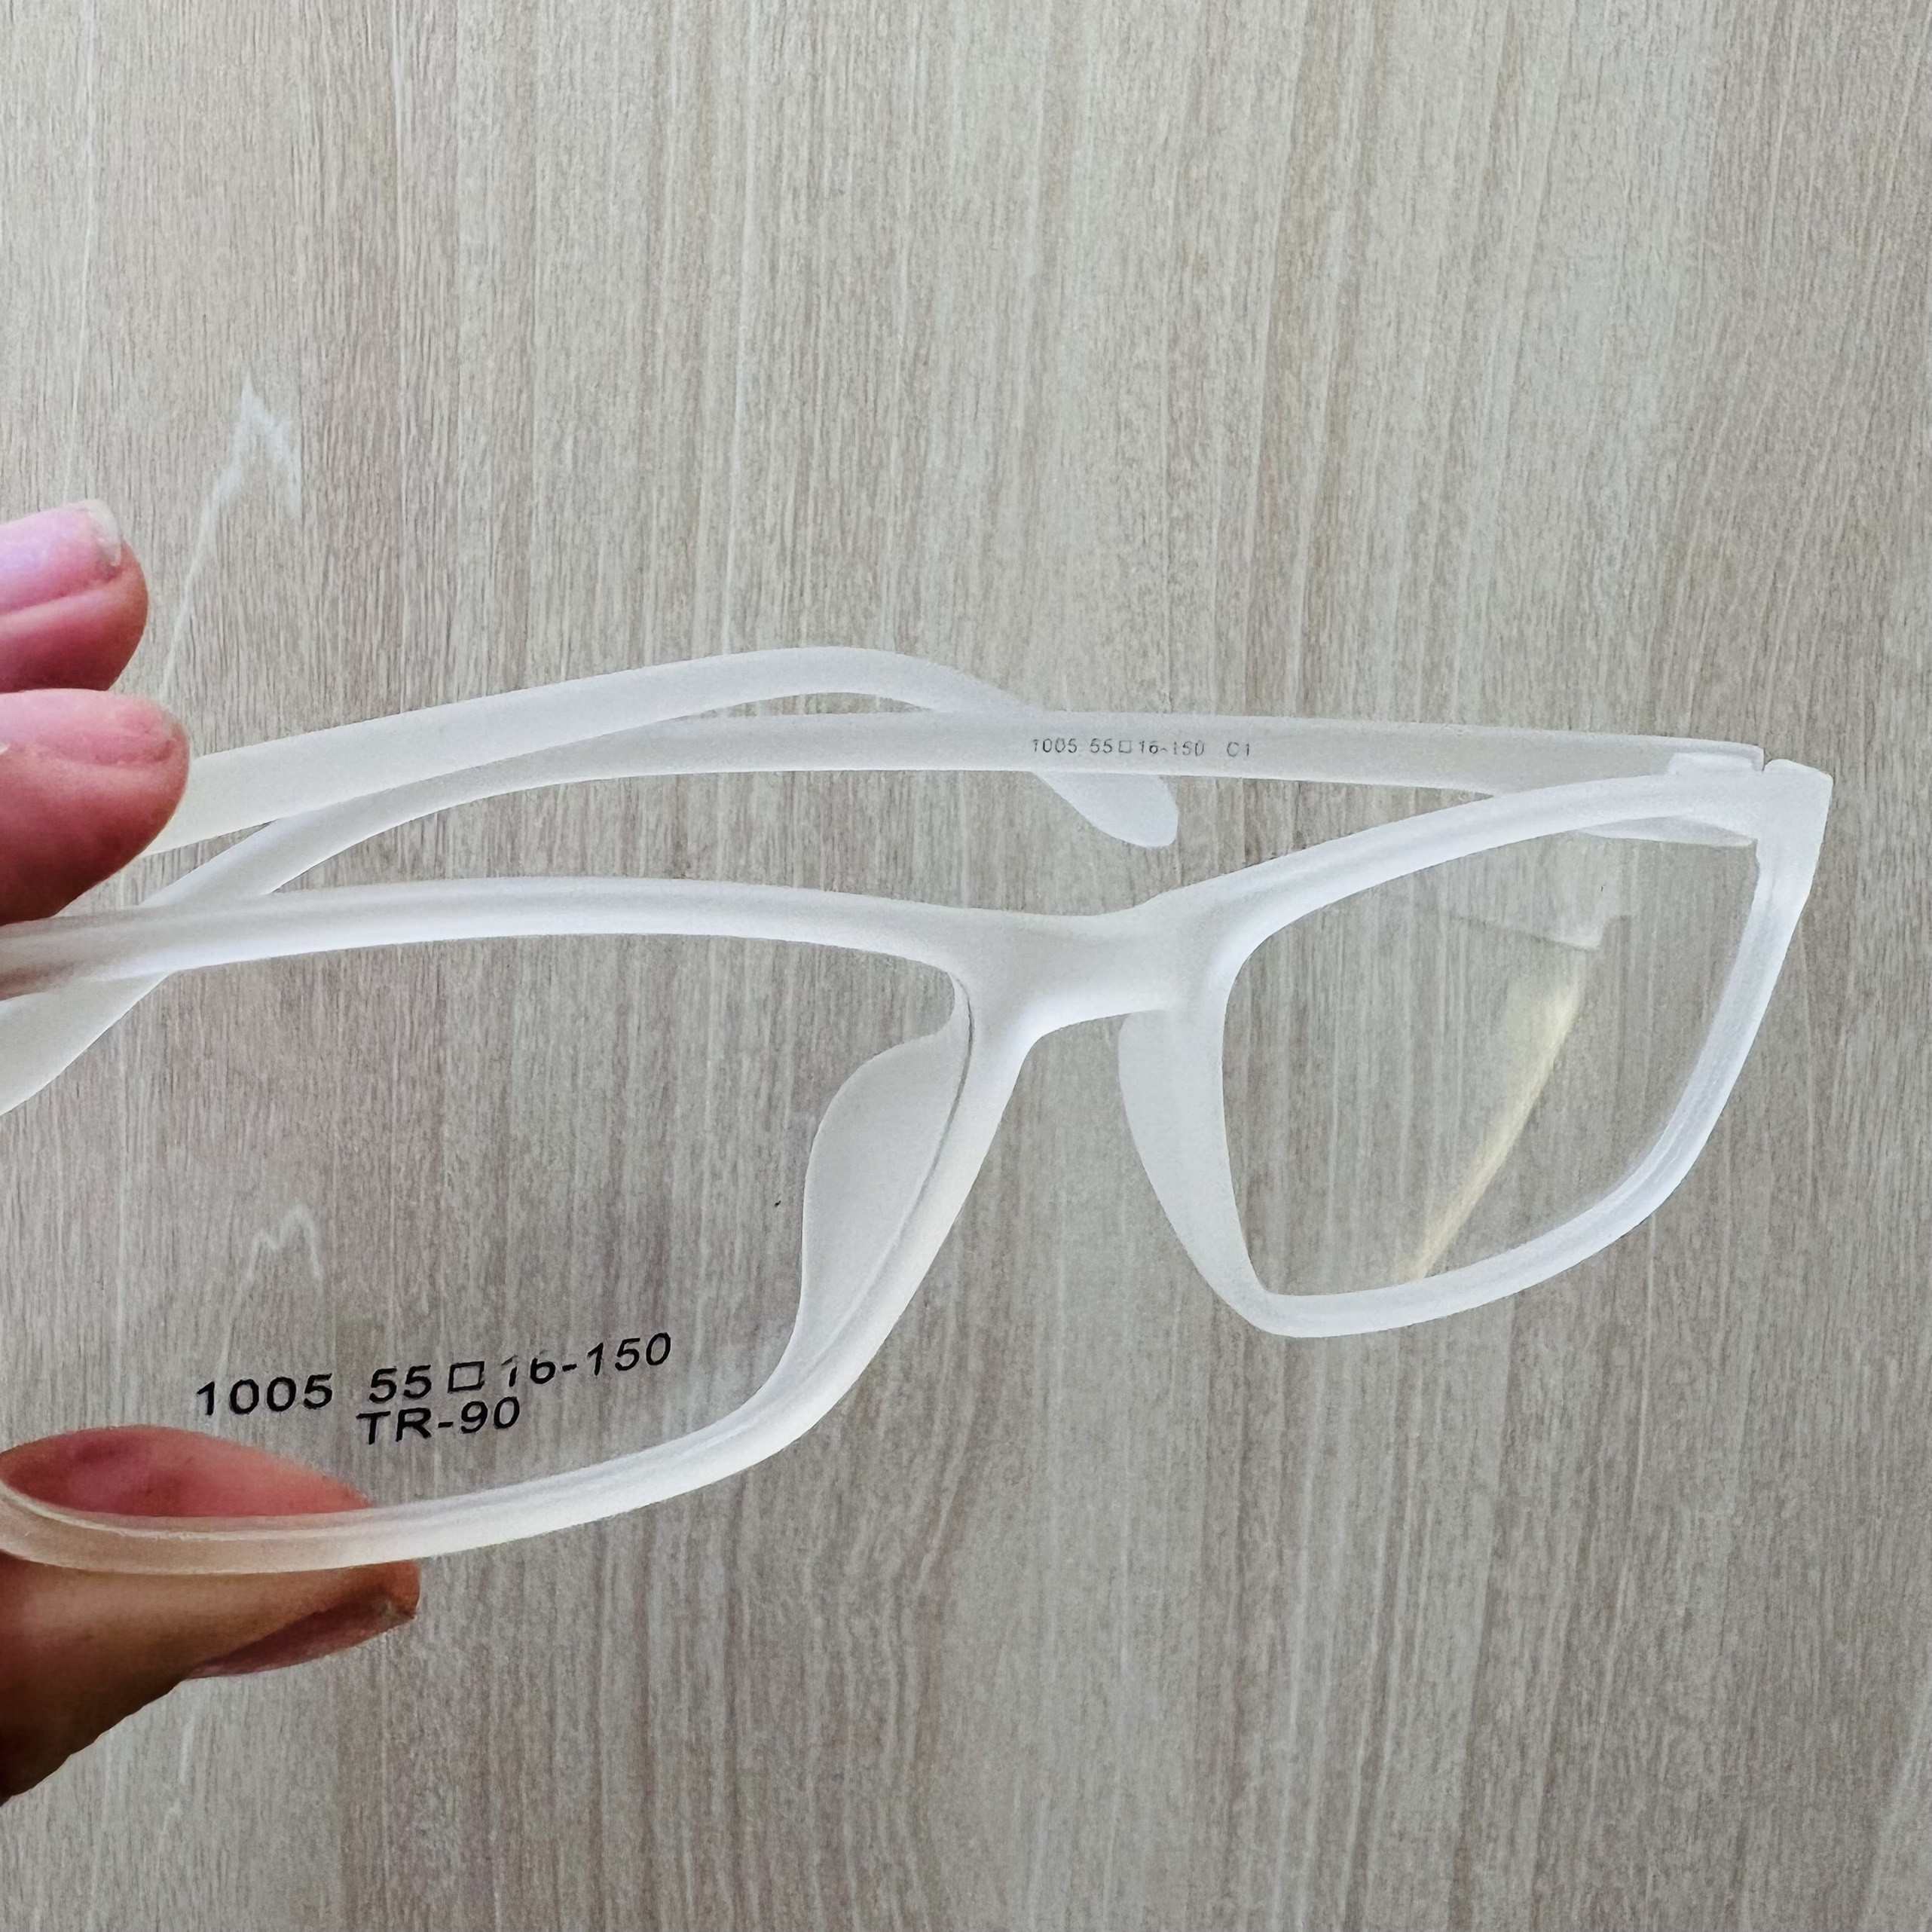 Gọng kính nhựa tr90 siêu nhẹ siêu bền thời trang OURESS - 1005